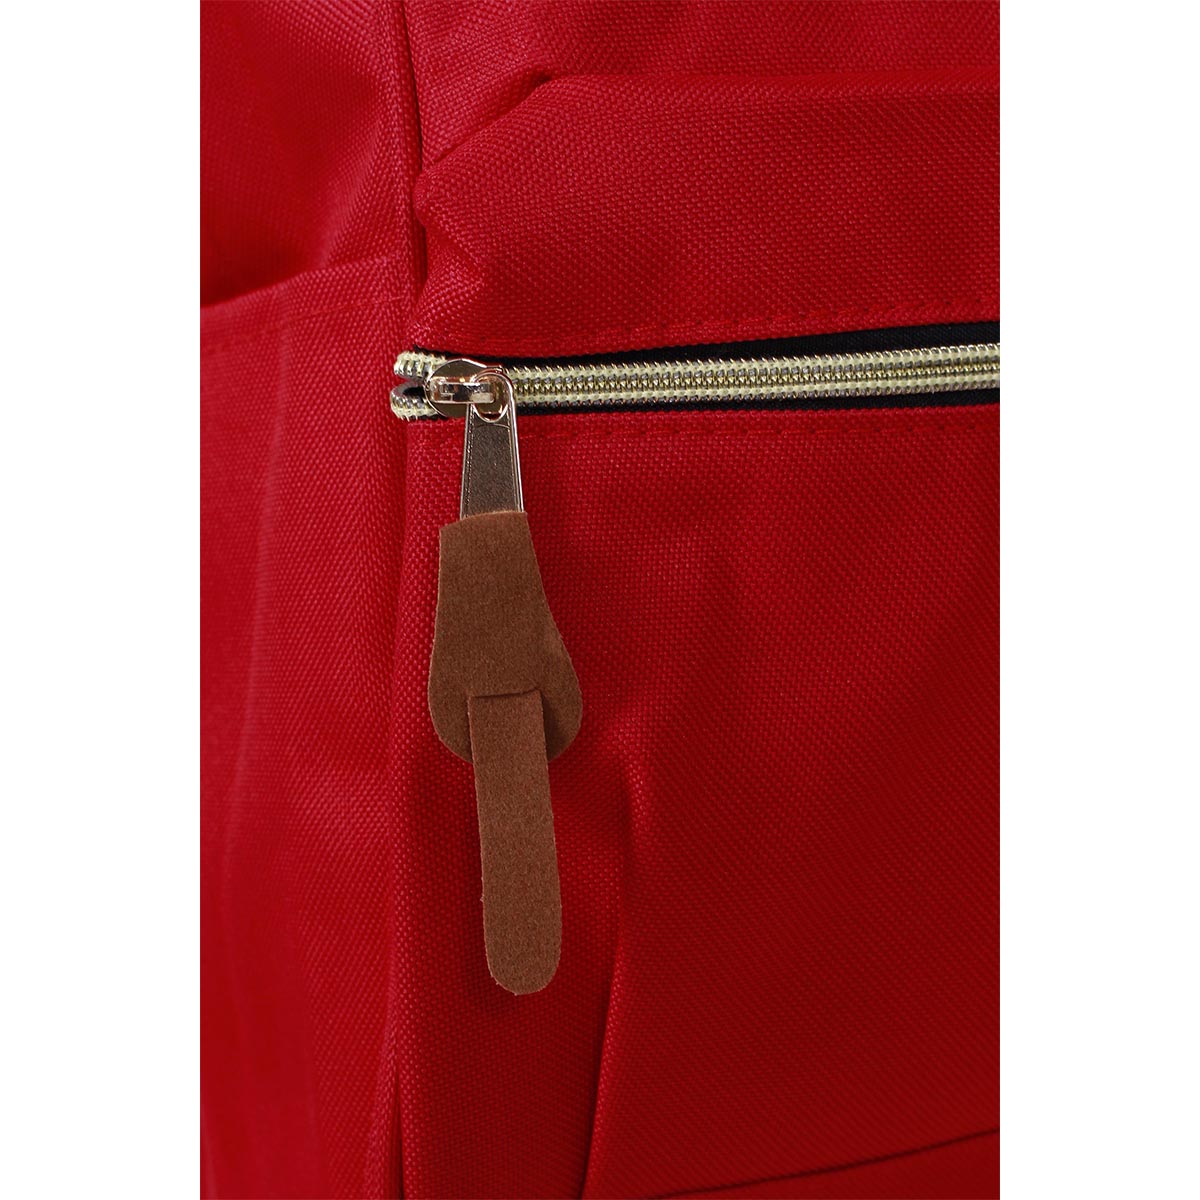 Anello Classic Red - Retro Bags